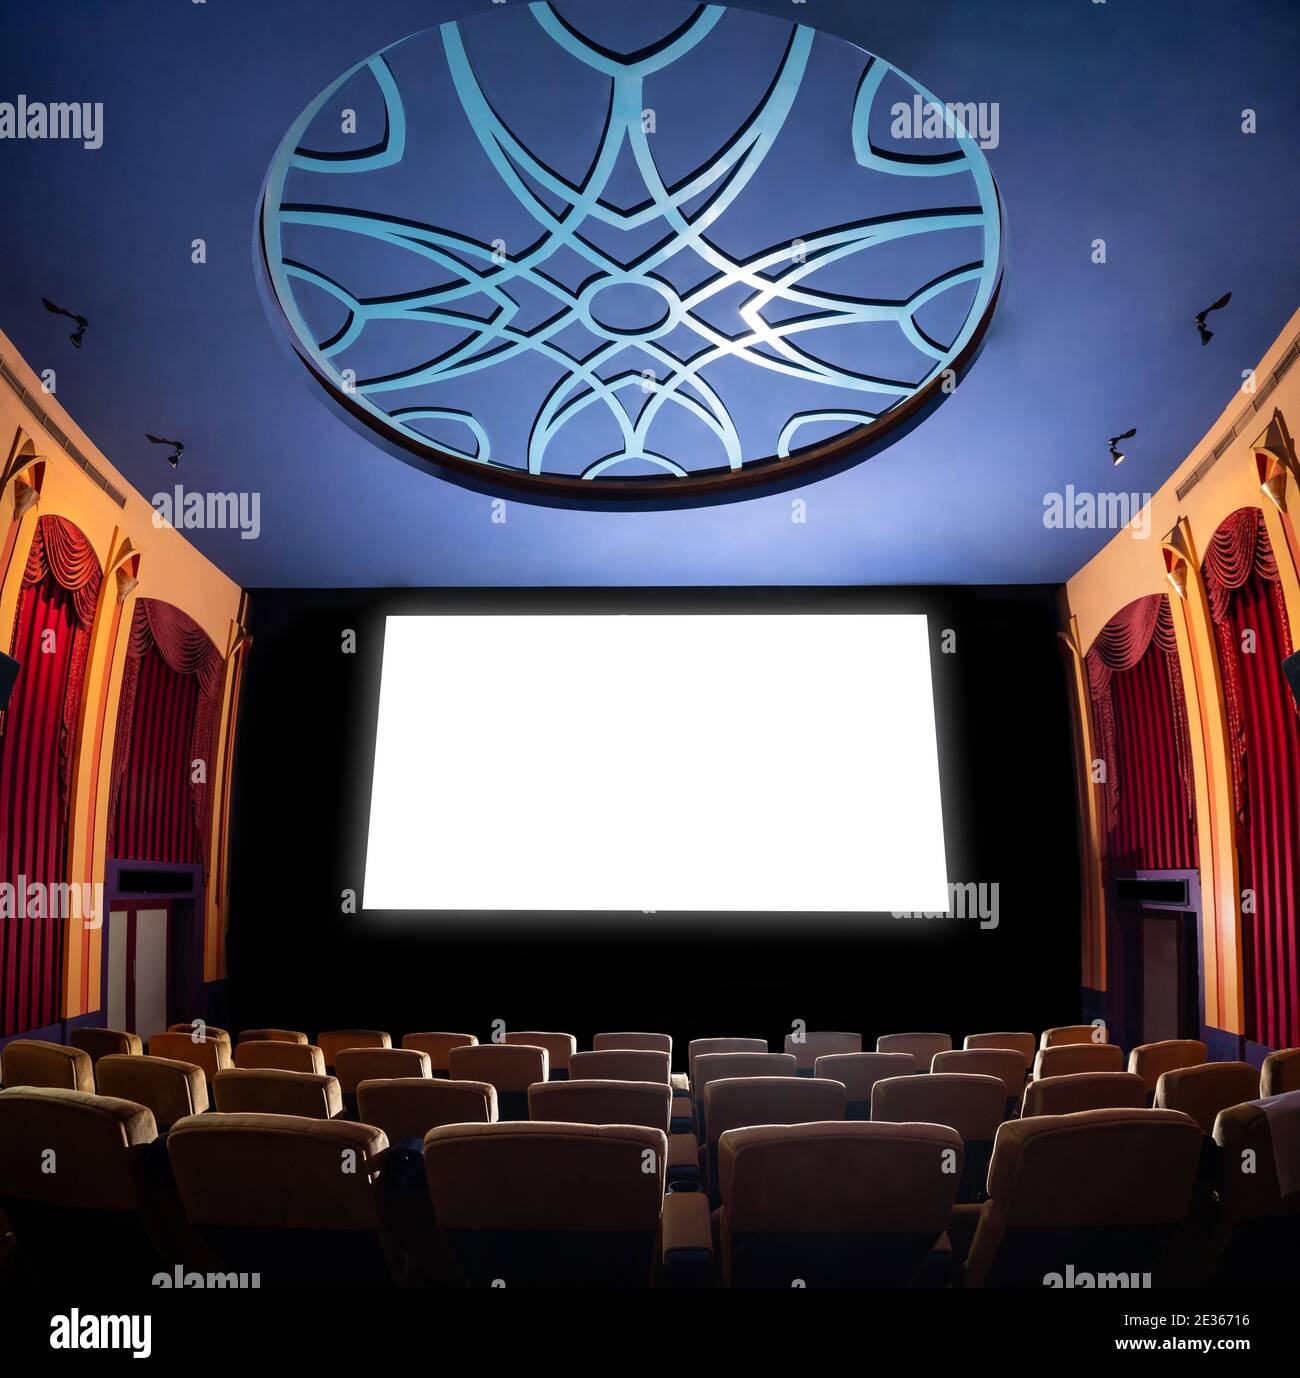 Kinoleinwand vor den Sitzreihen im Kino, auf der die weiße Leinwand vom Kinematographen projiziert wird. Das Kino ist eingerichtet Stockfoto